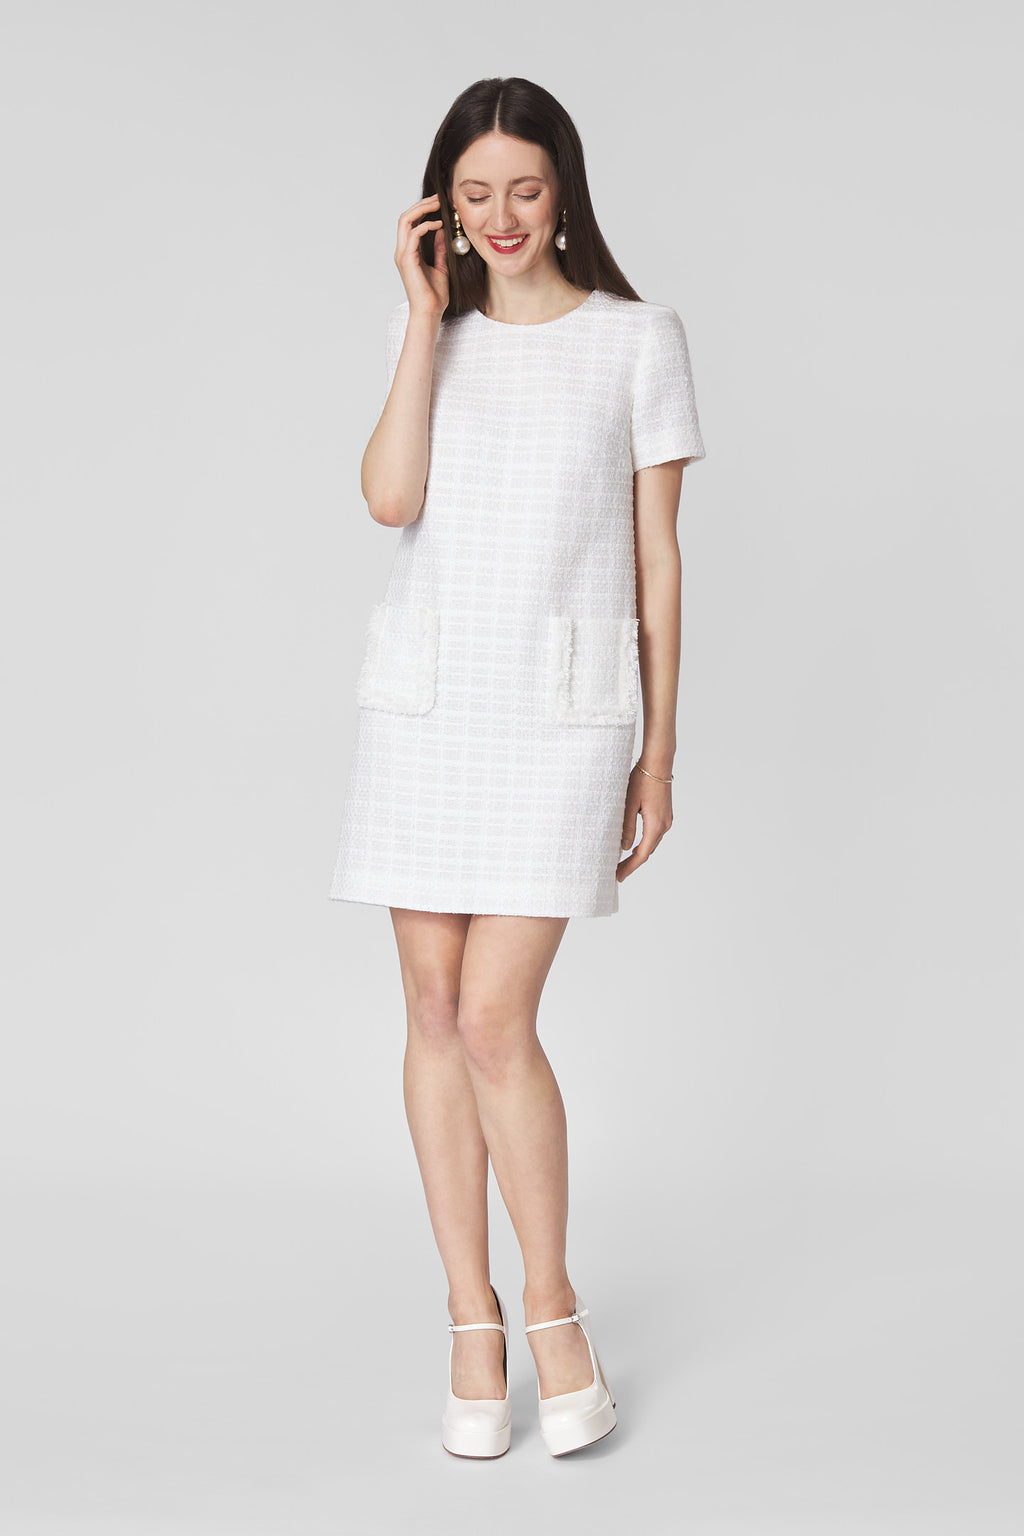 white tweed dress